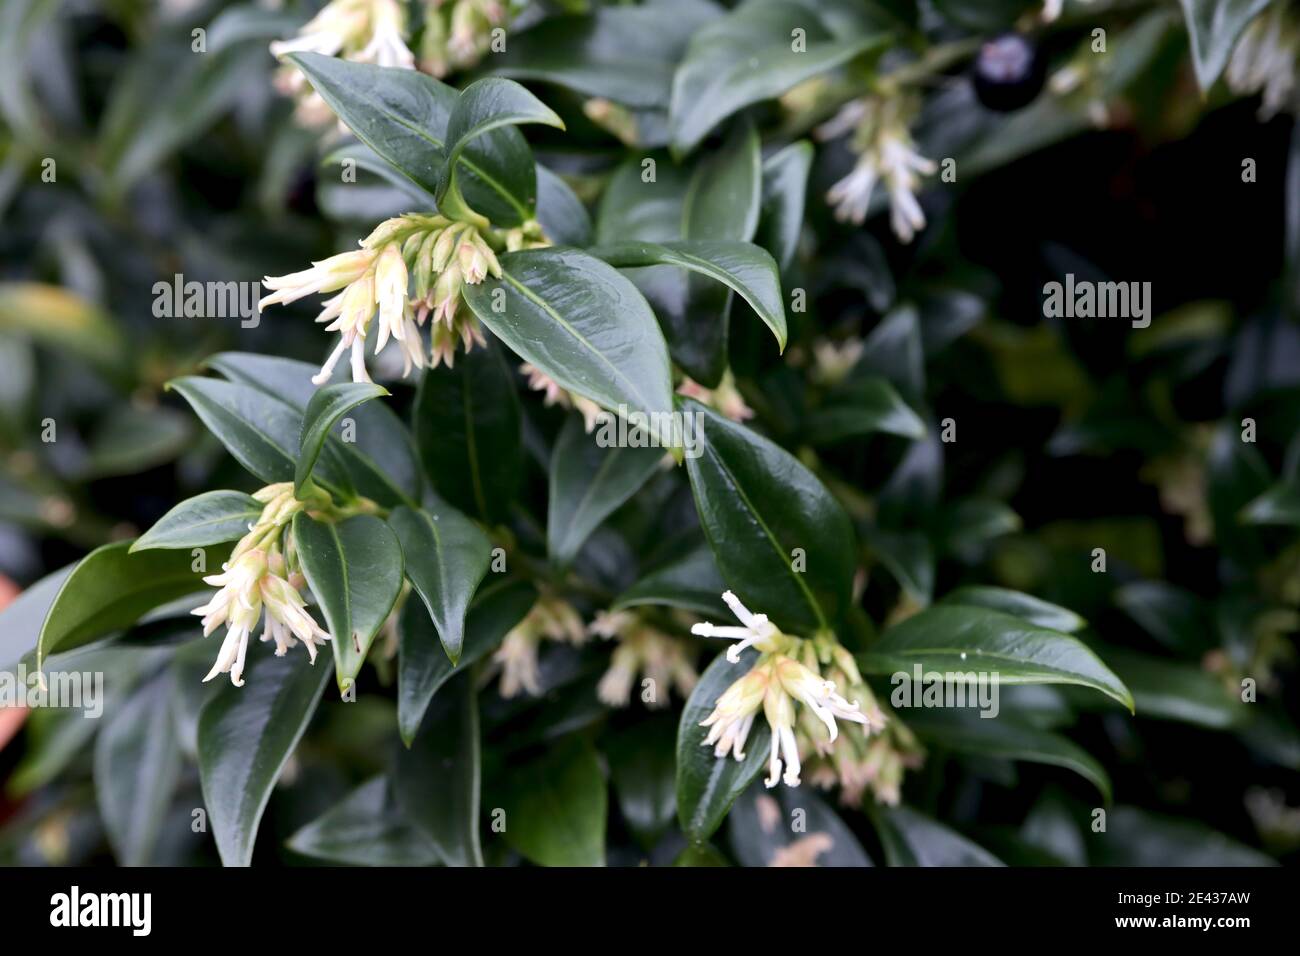 Sarcococca confusa Sweet box – fiori tubolari bianchi sottili altamente profumati con fogliame lucido verde scuro, gennaio, Inghilterra, Regno Unito Foto Stock